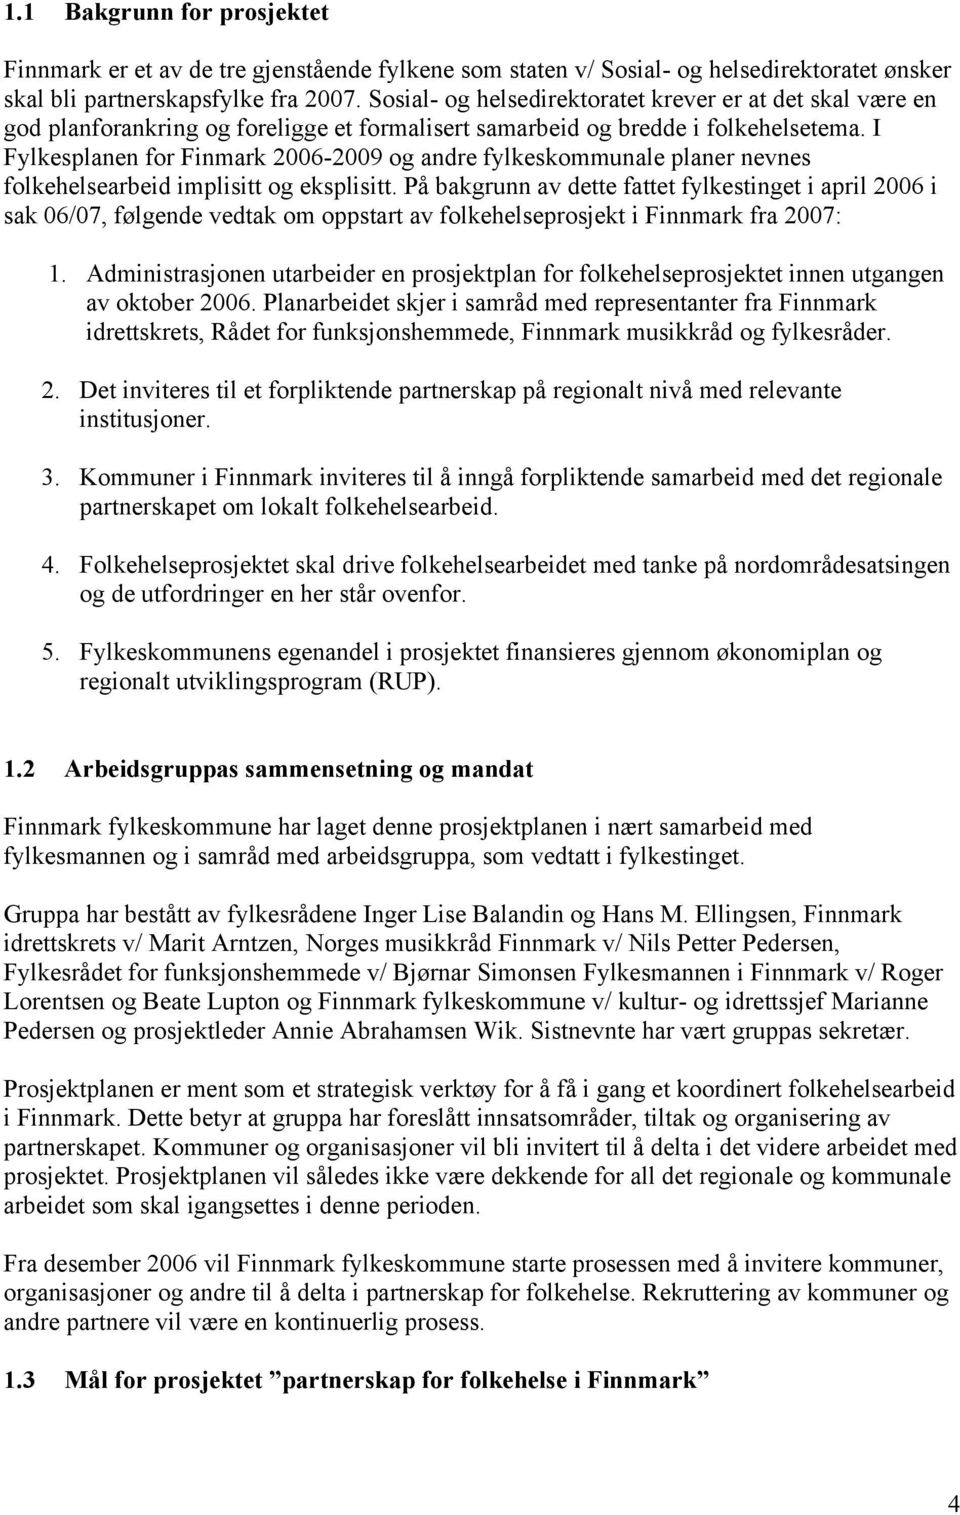 I Fylkesplanen for Finmark 2006-2009 og andre fylkeskommunale planer nevnes folkehelsearbeid implisitt og eksplisitt.